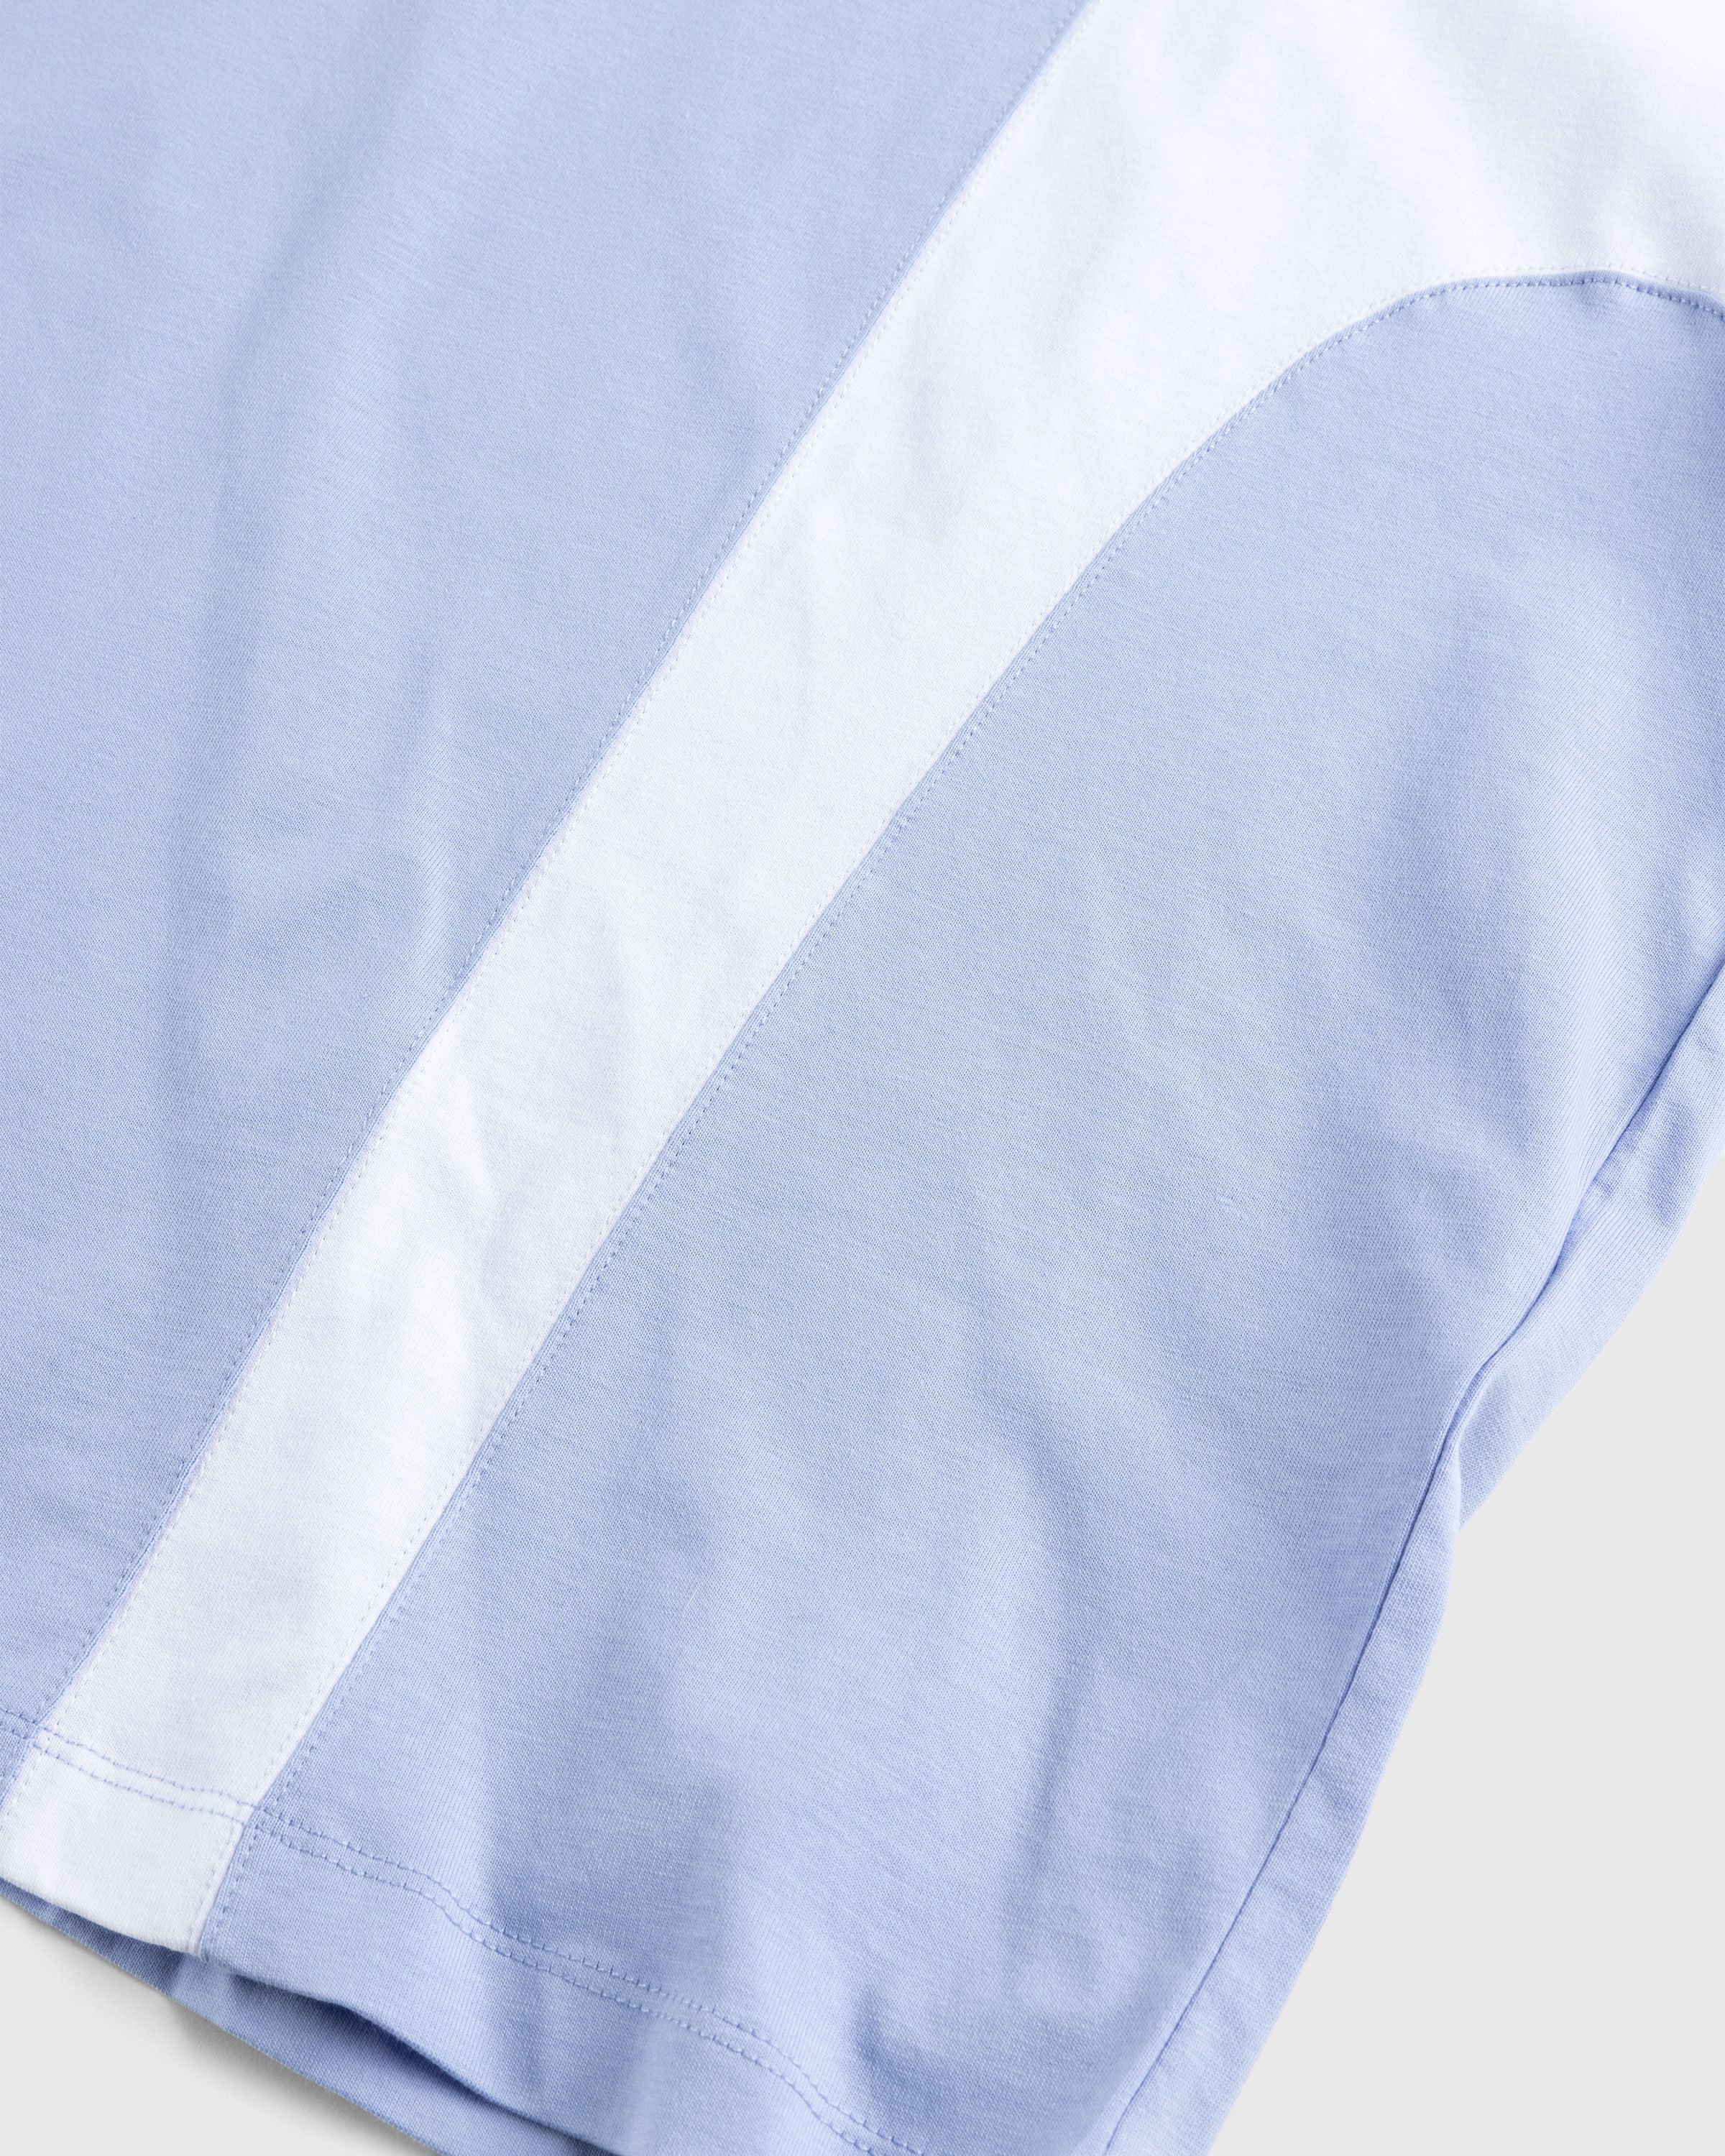 Martine Rose - Oversized Panelled T-Shirt Blue / White / Black - Clothing - Blue - Image 6